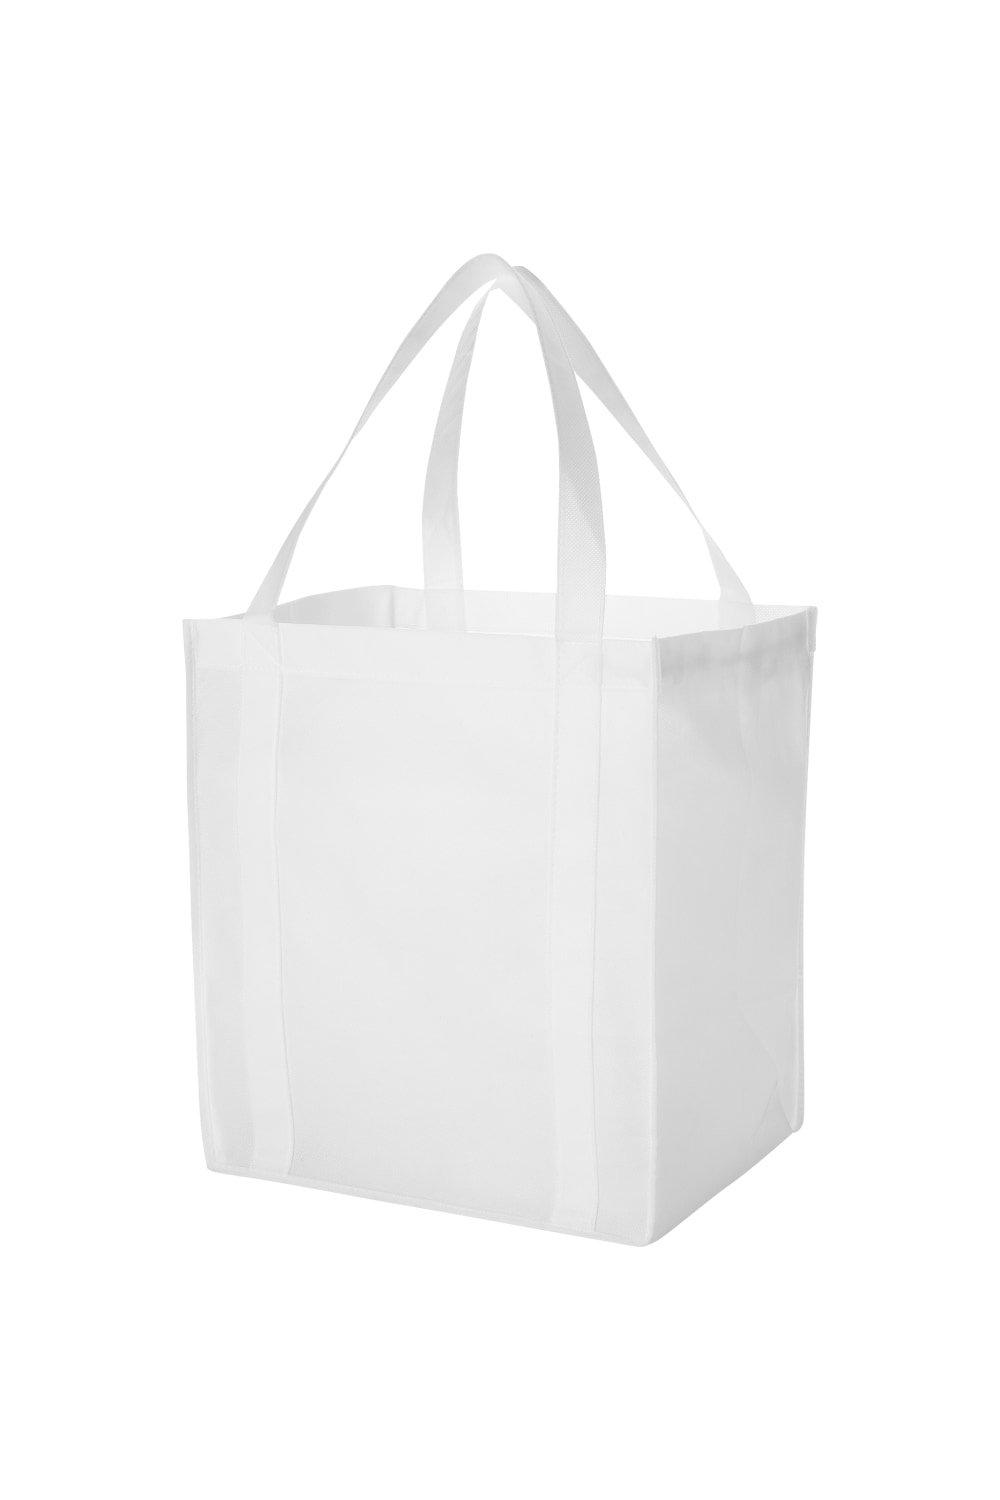 Нетканая продуктовая сумка Liberty (2 шт.) Bullet, белый 8 шт новогодняя подарочная сумка многофункциональная нетканая рождественская сумка для упаковки подарков товары для рождества